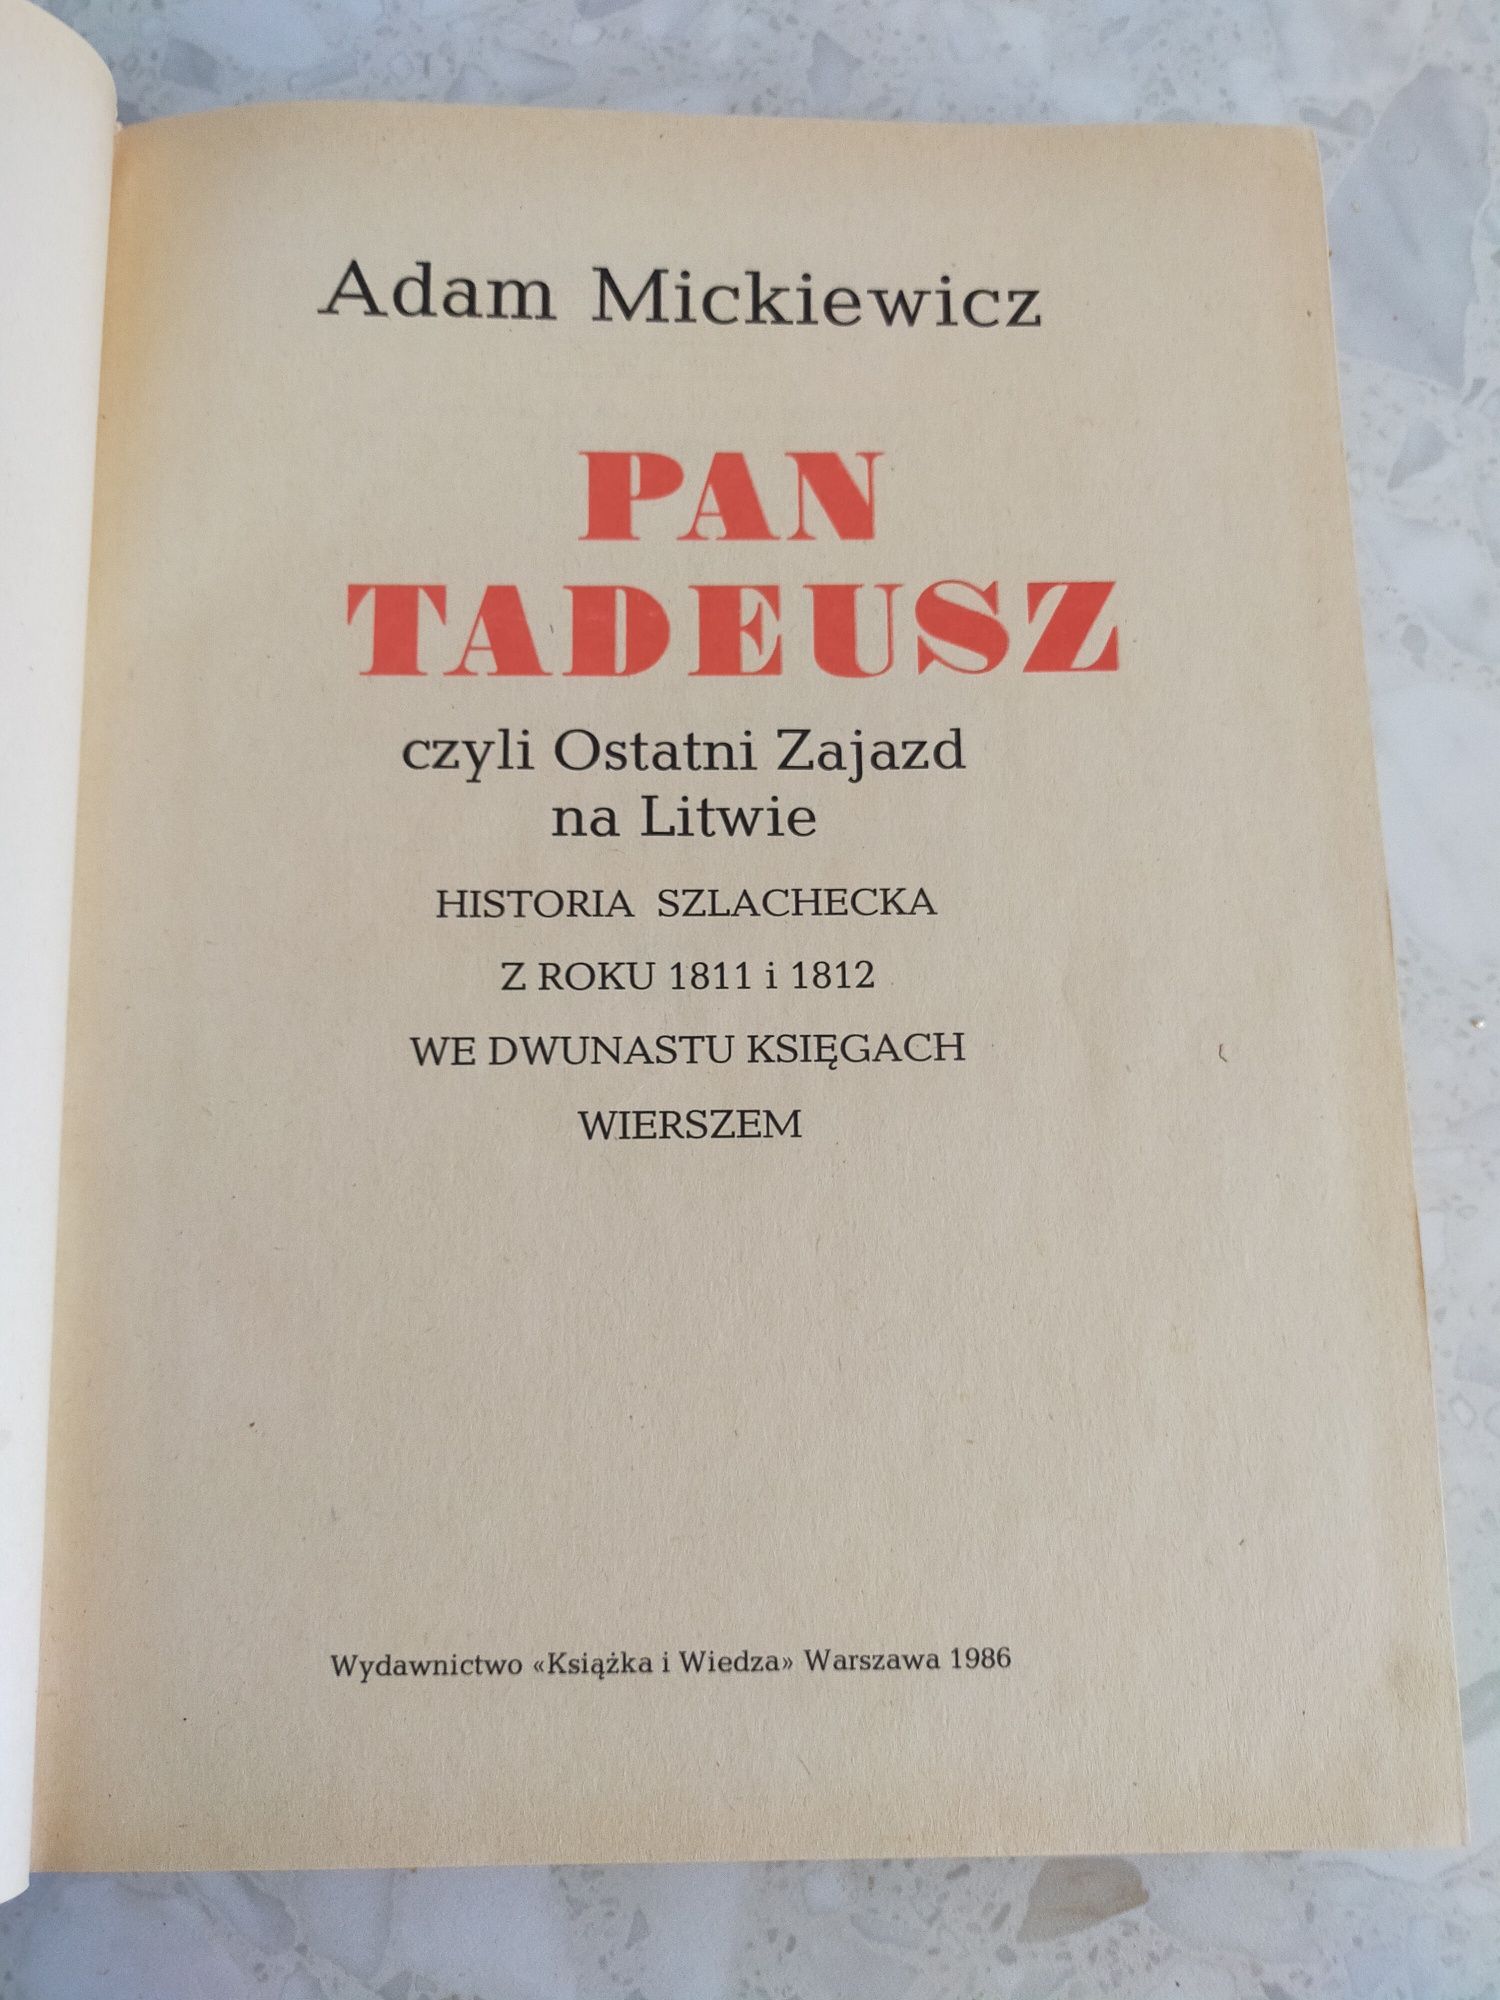 Pan Tadeusz - A. Mickiewicz